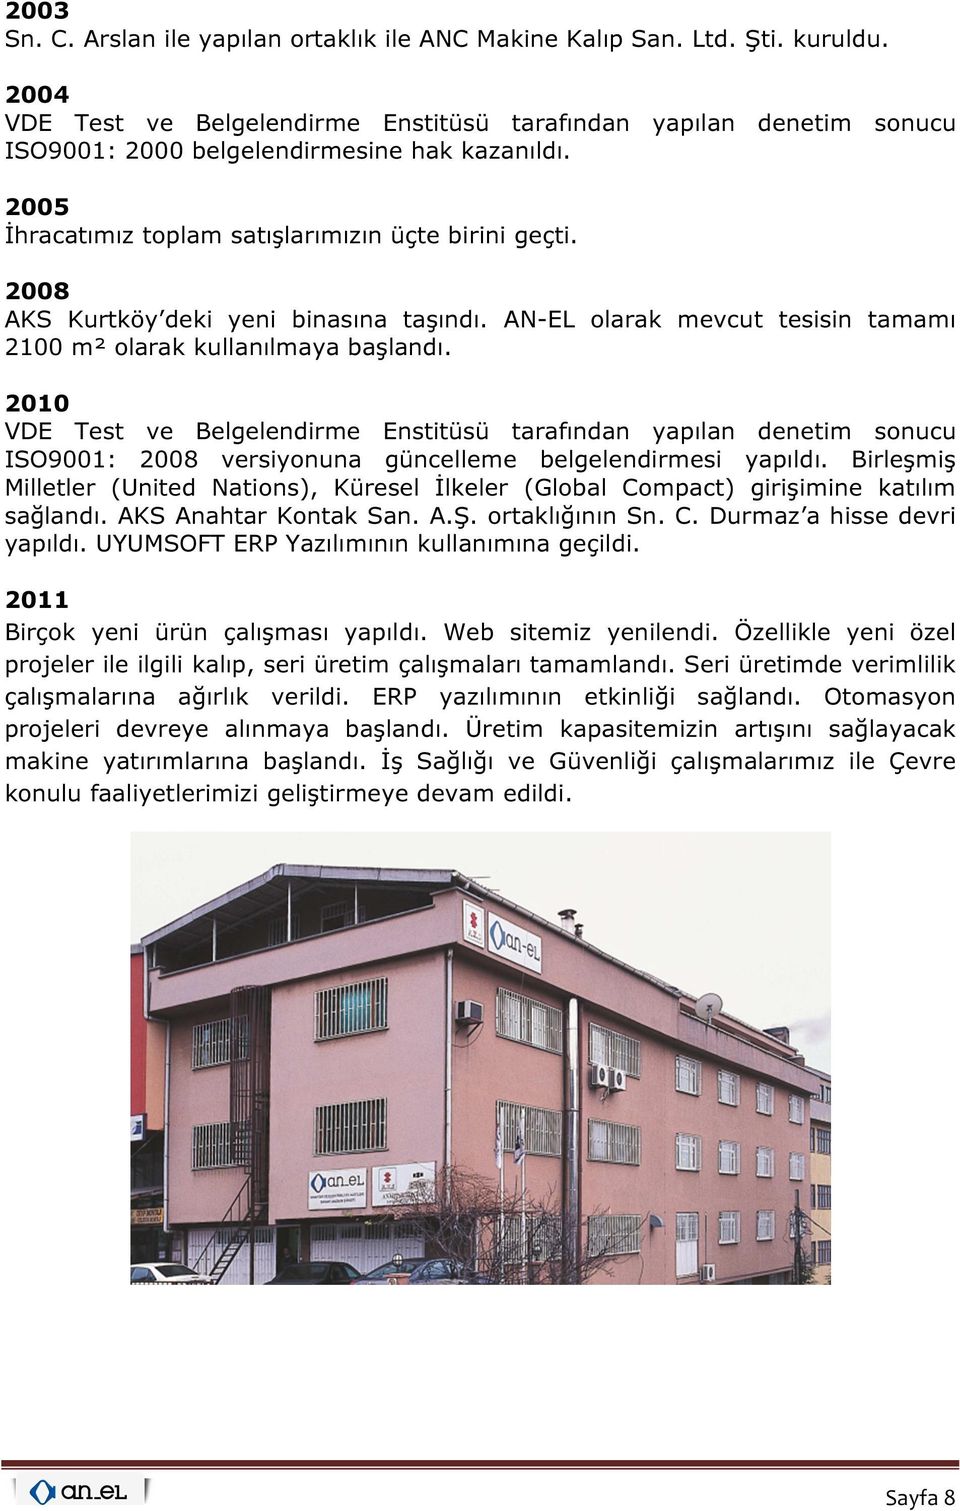 2008 AKS Kurtköy deki yeni binasına taşındı. AN-EL olarak mevcut tesisin tamamı 2100 m² olarak kullanılmaya başlandı.